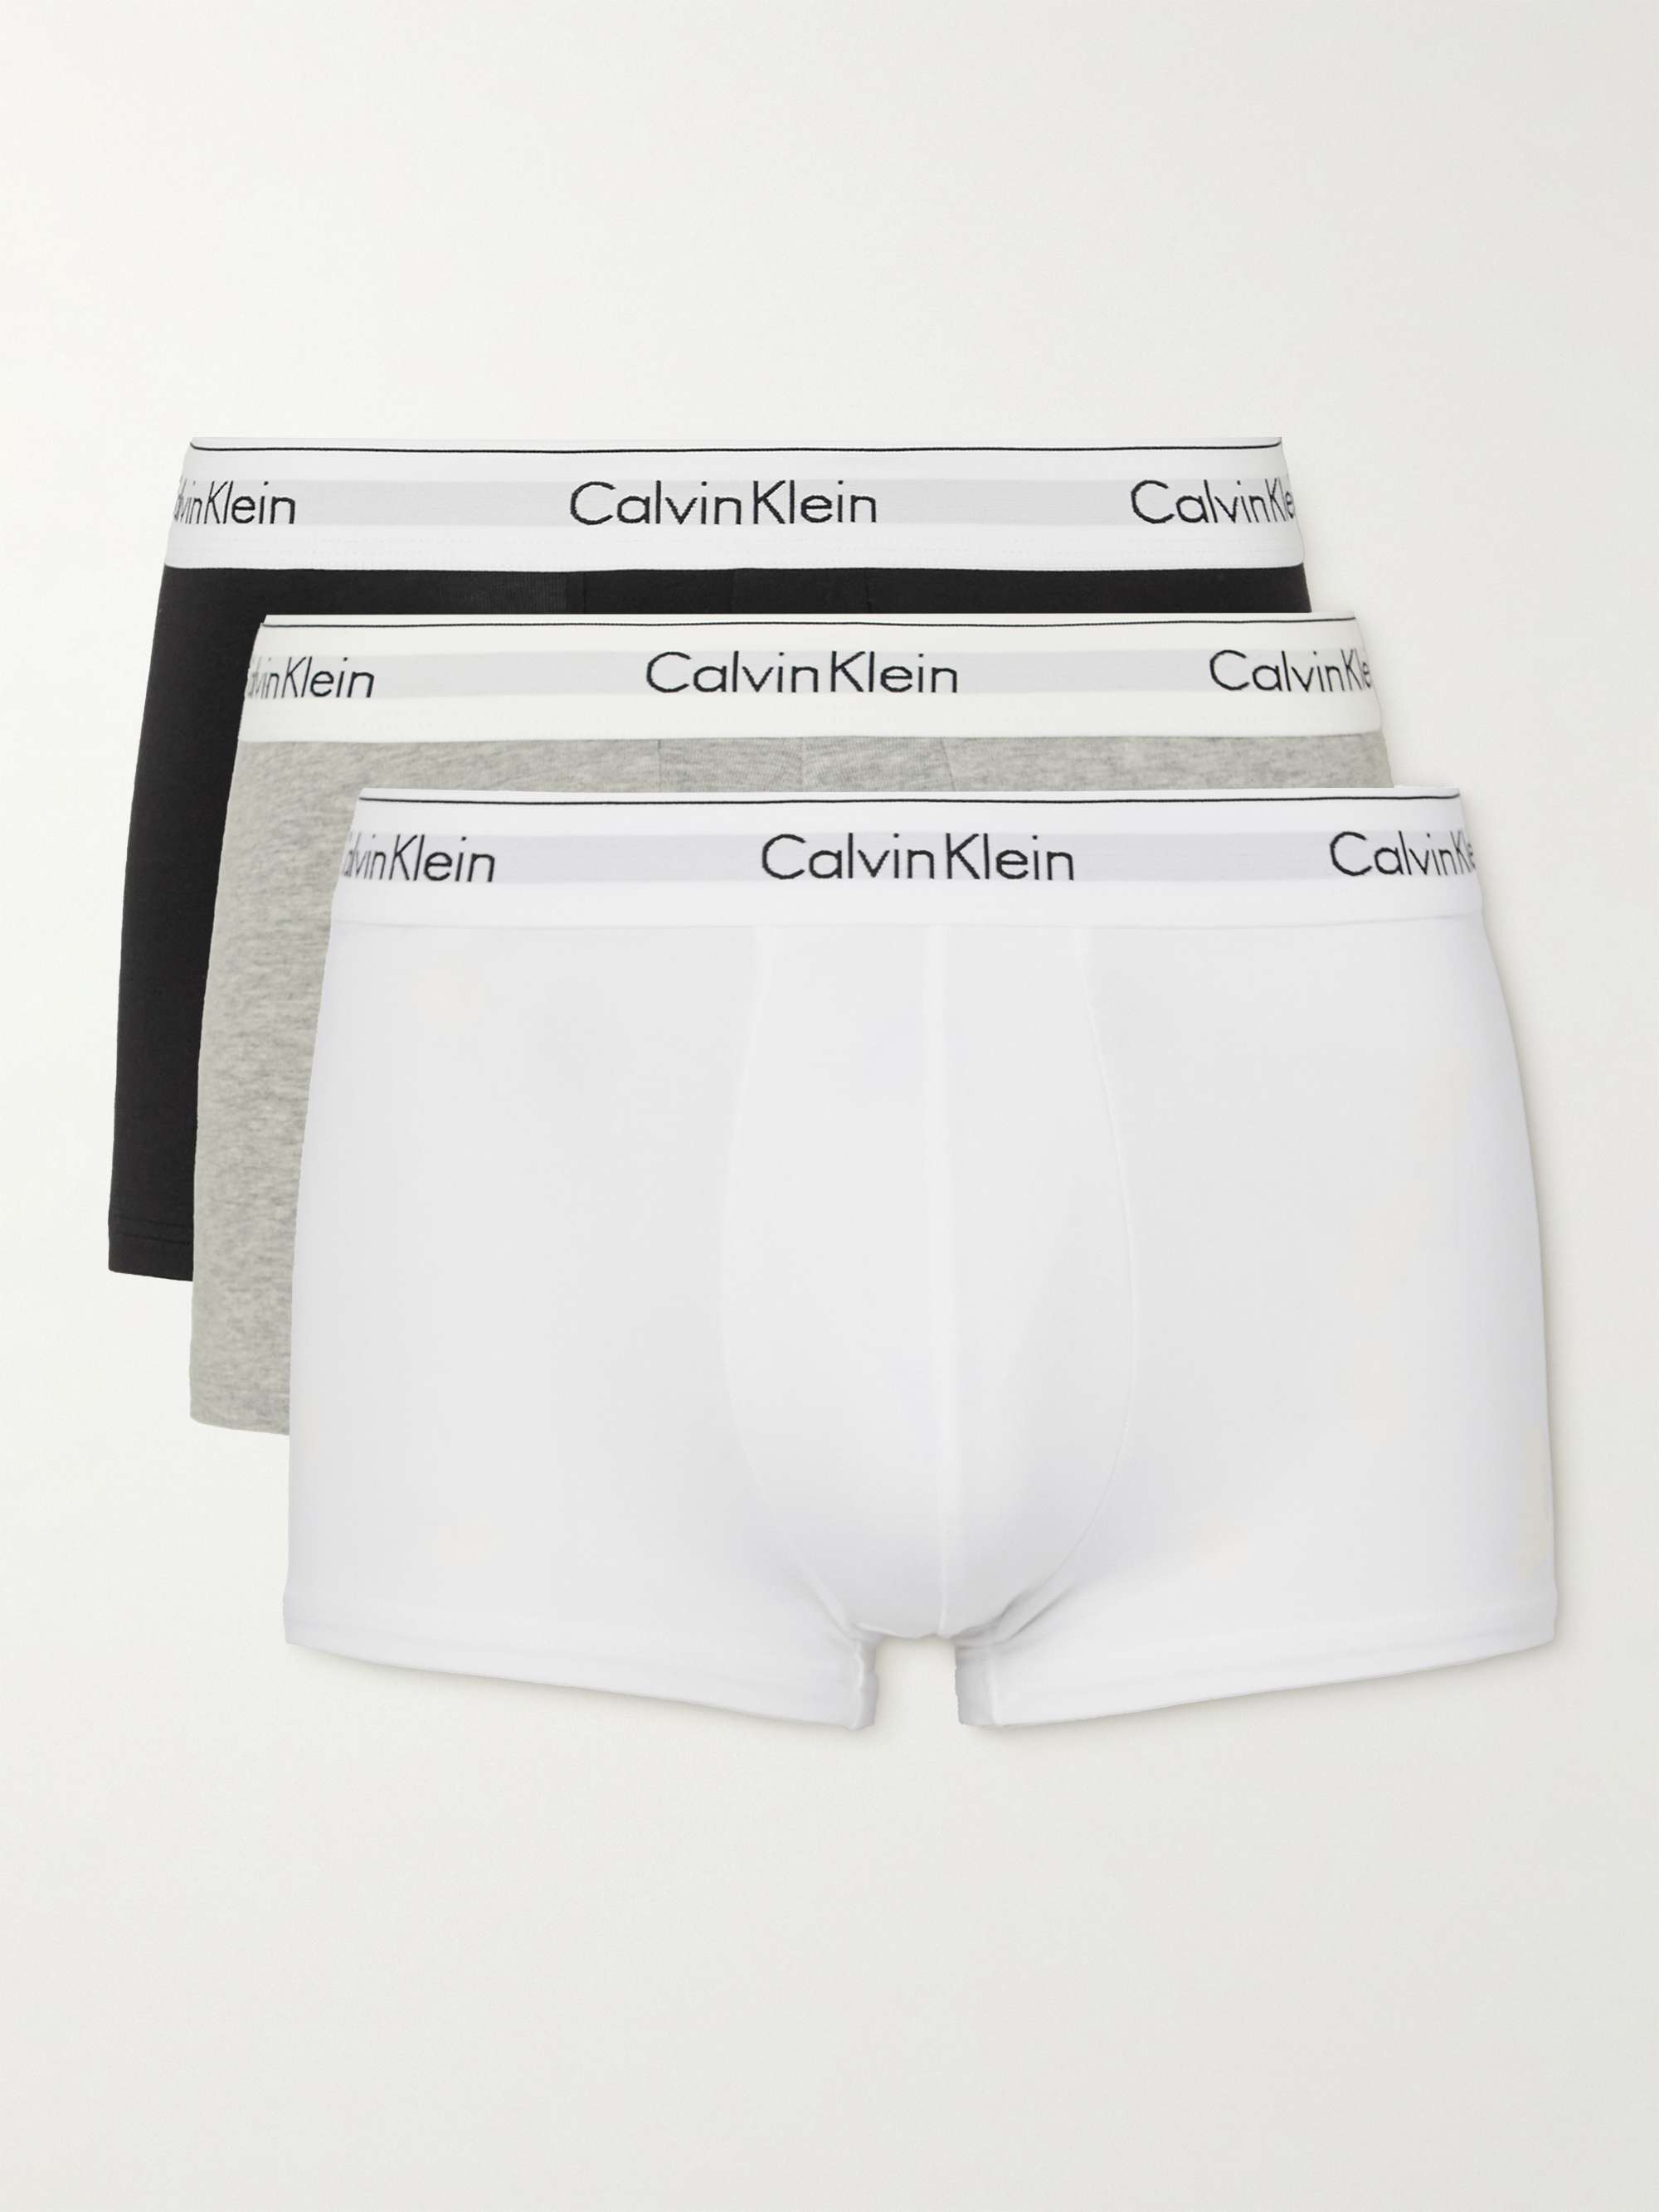 Calvin Klein Cotton Stretch 3 Pack Boxer Brief, Black/White/Grey